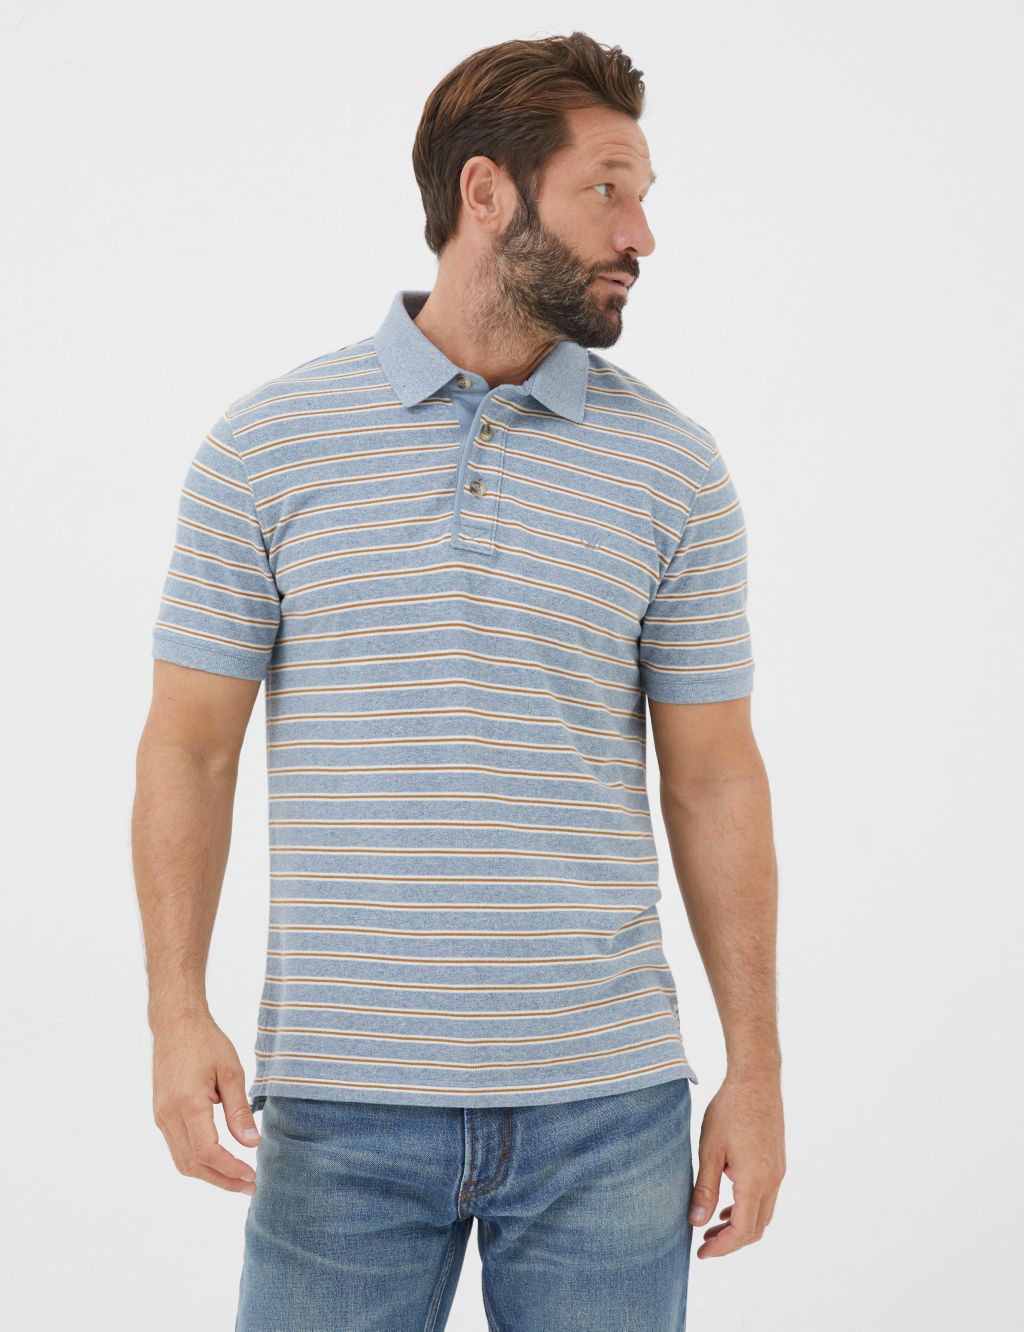 Organic Cotton Pique Striped Polo Shirt